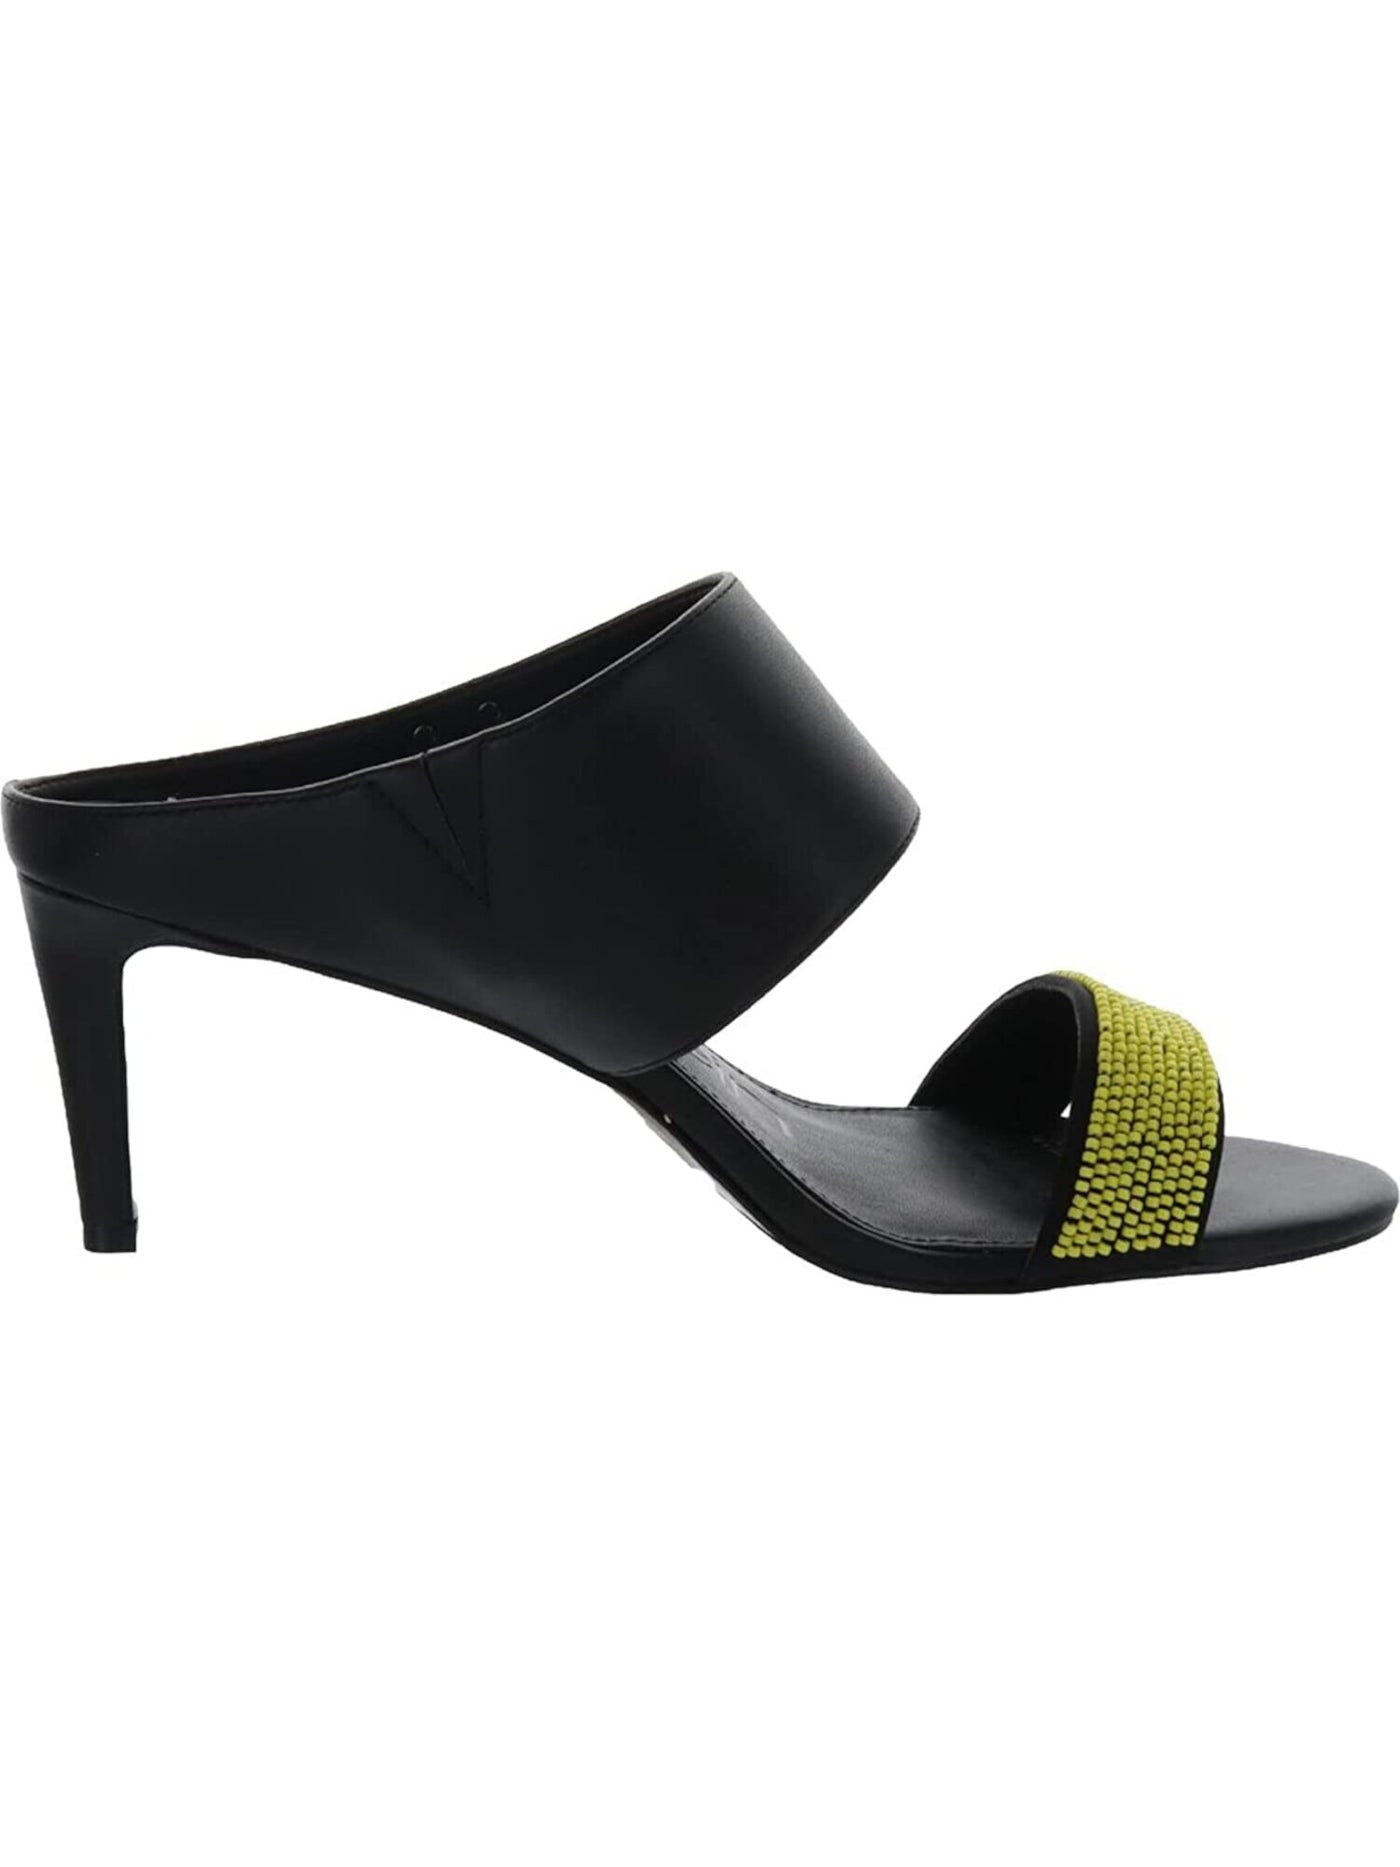 CALVIN KLEIN Womens Black Beaded Padded Cecily Round Toe Kitten Heel Slip On Slide Sandals Shoes 10 M